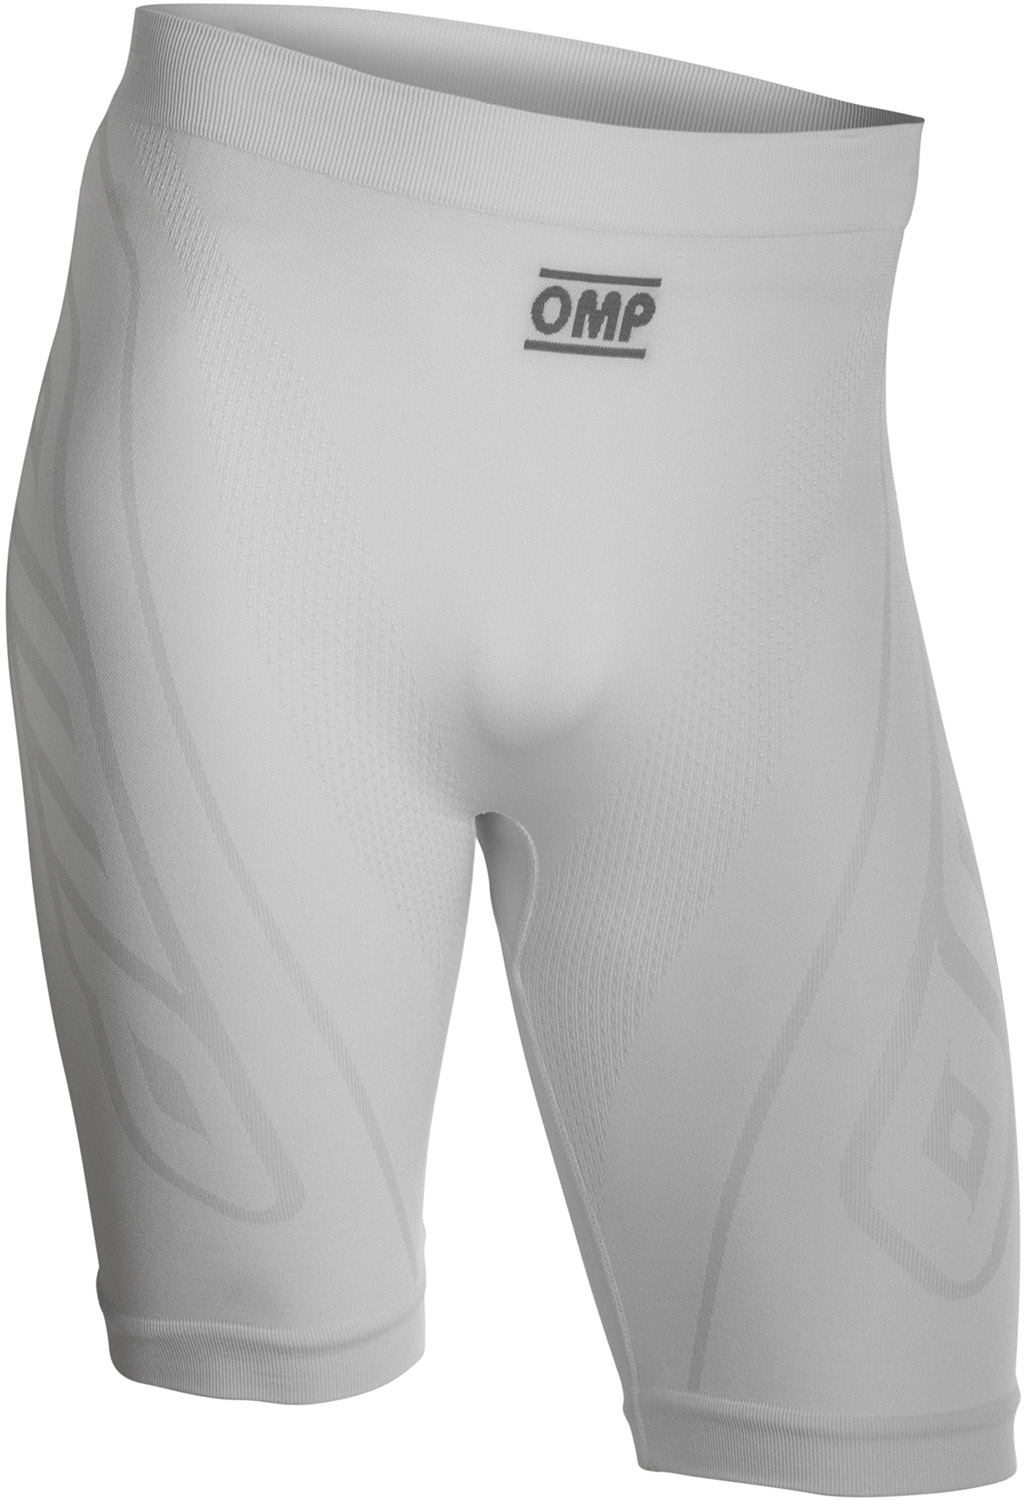 OMP Shorts KS